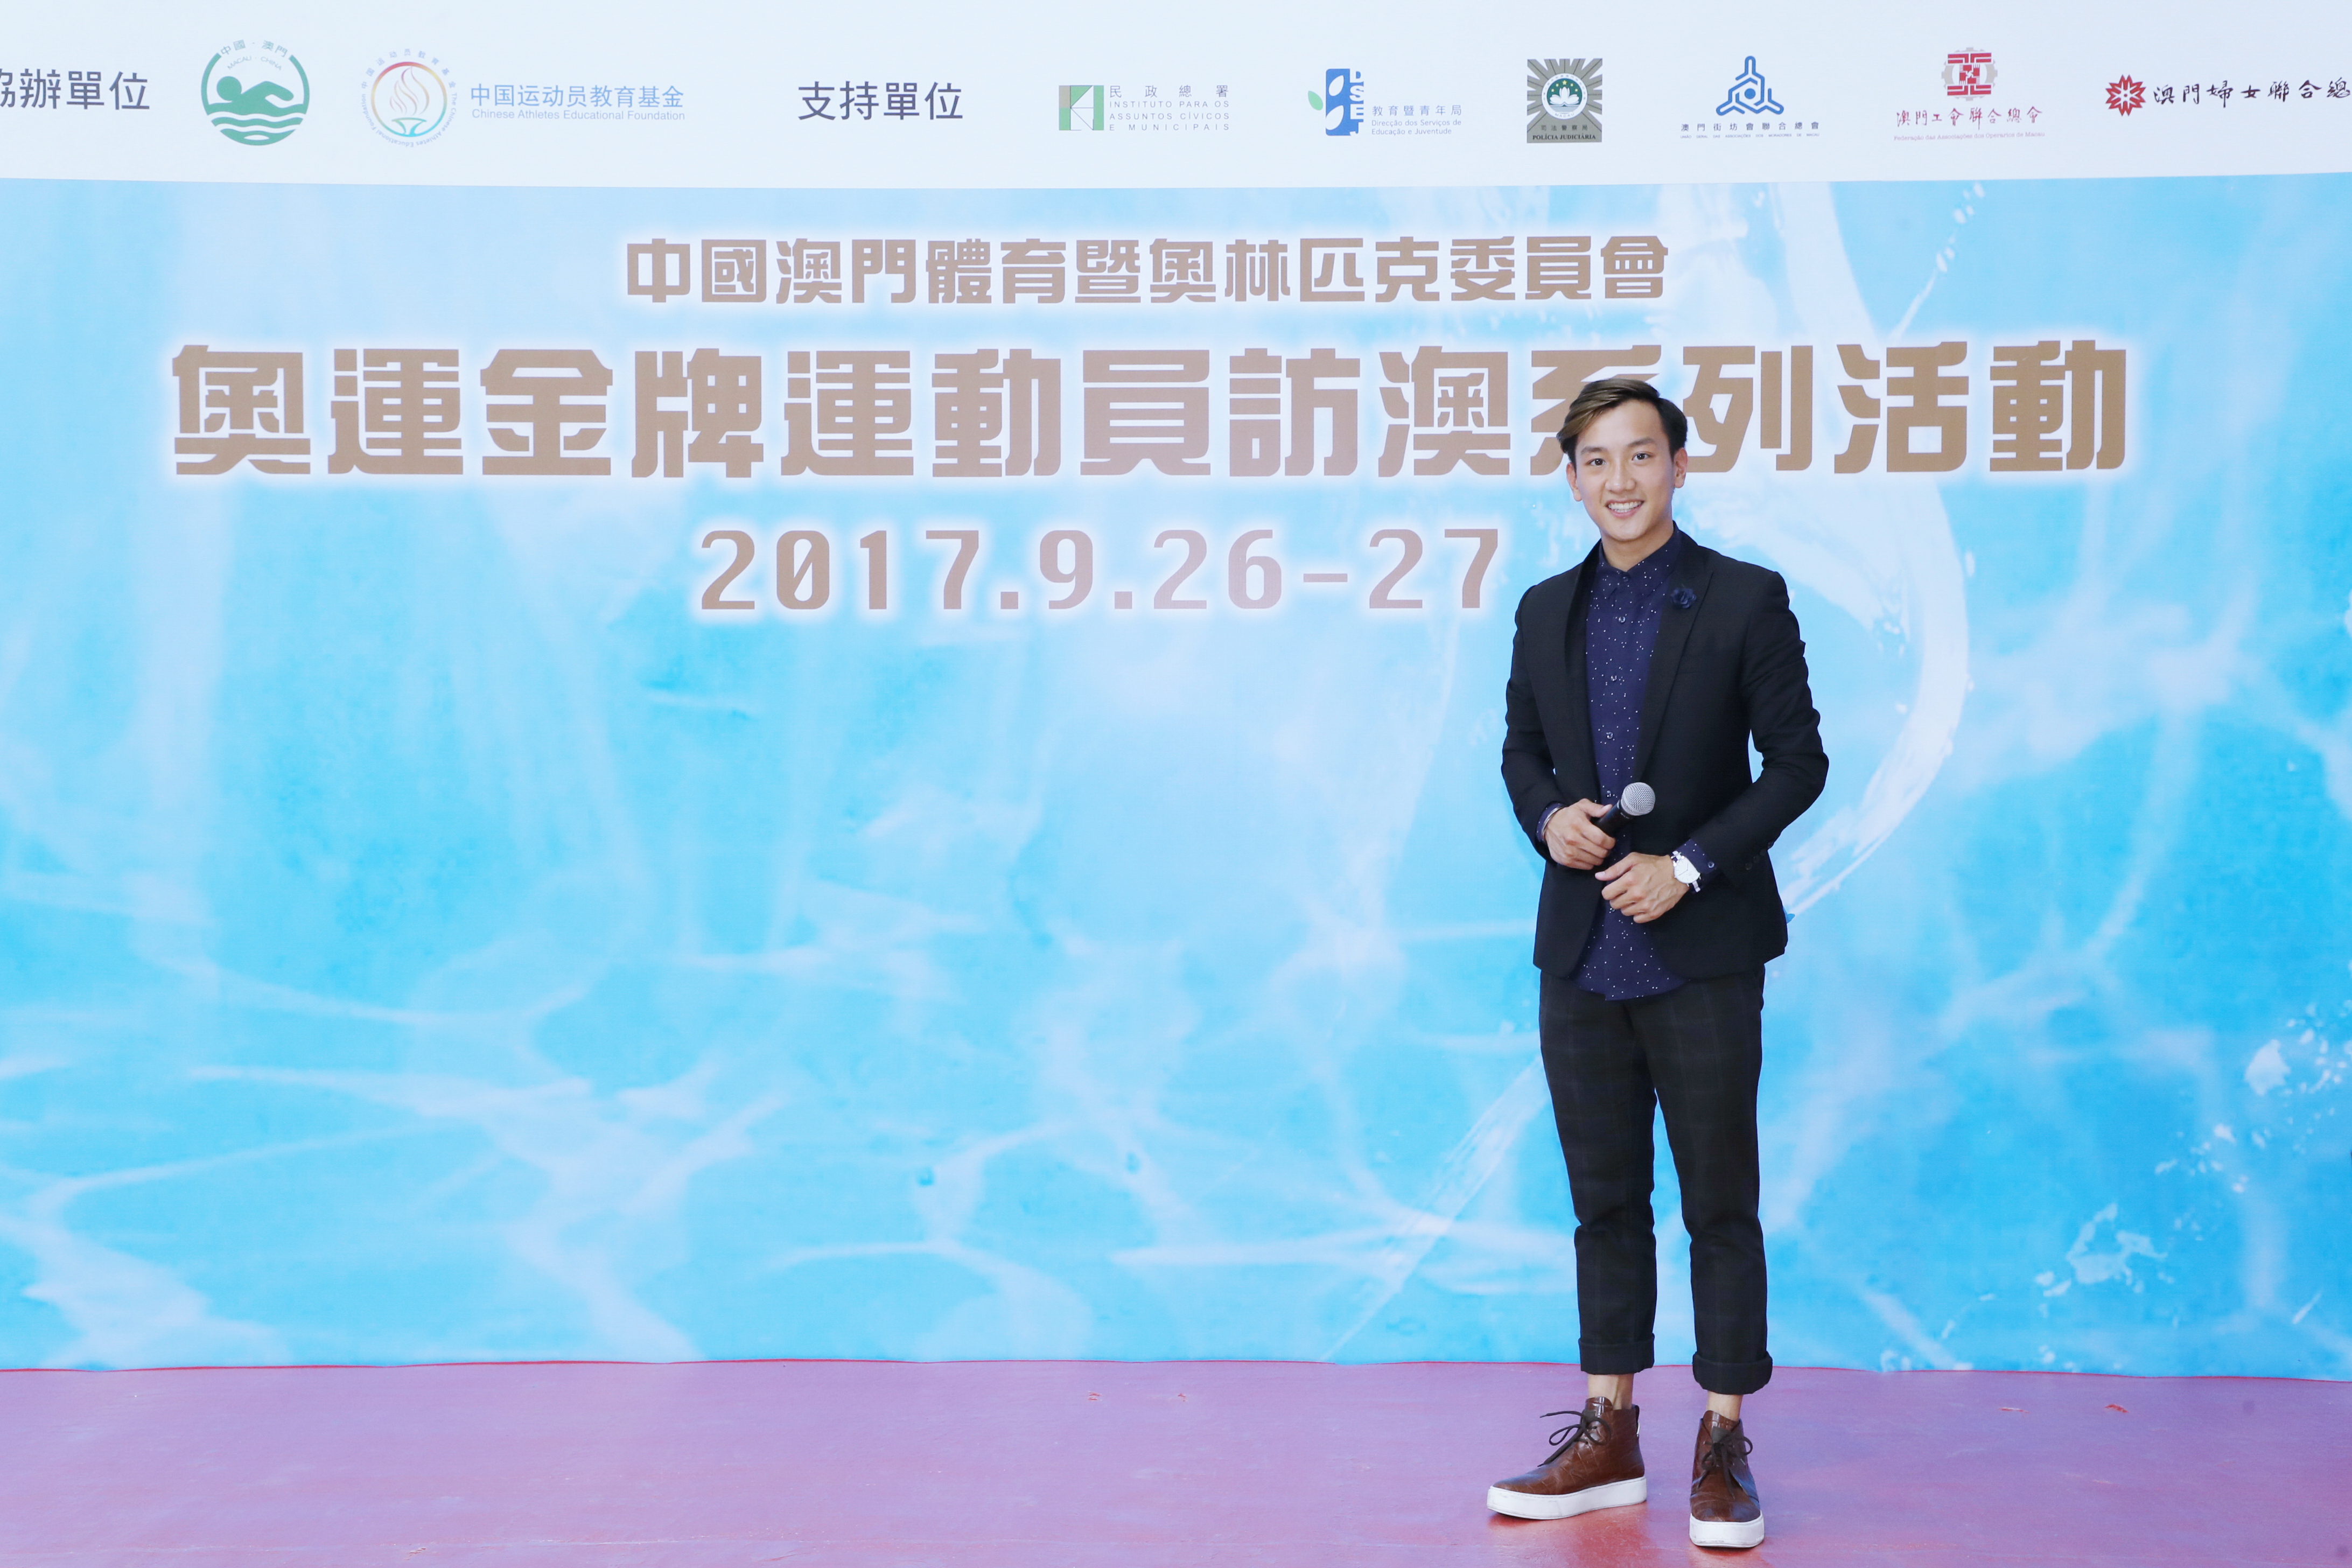 周啓陽 Elvis Chao之司儀主持紀錄: 奧運金牌跳水運動員訪澳 - 跳水表演